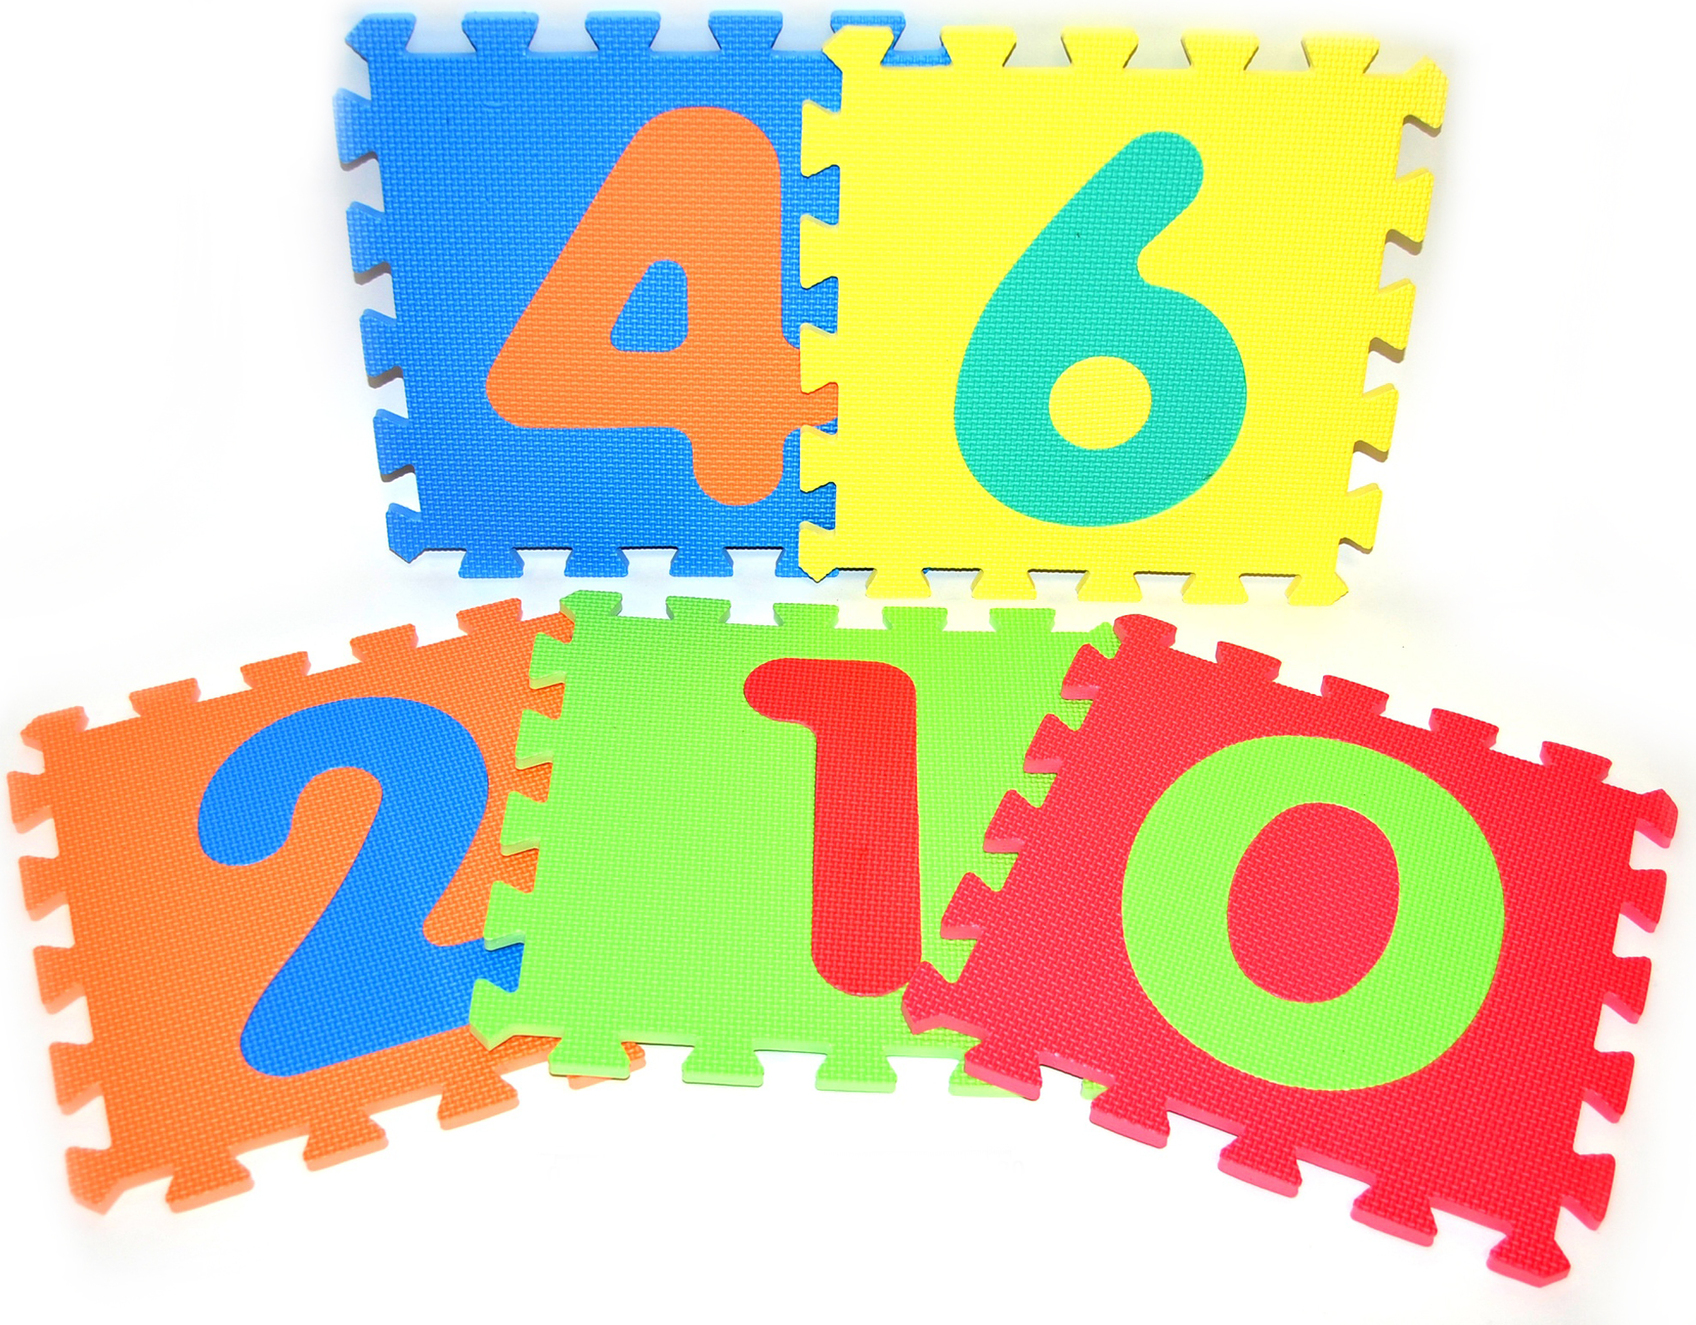 Měkké puzzle bloky číslice 30x30cm